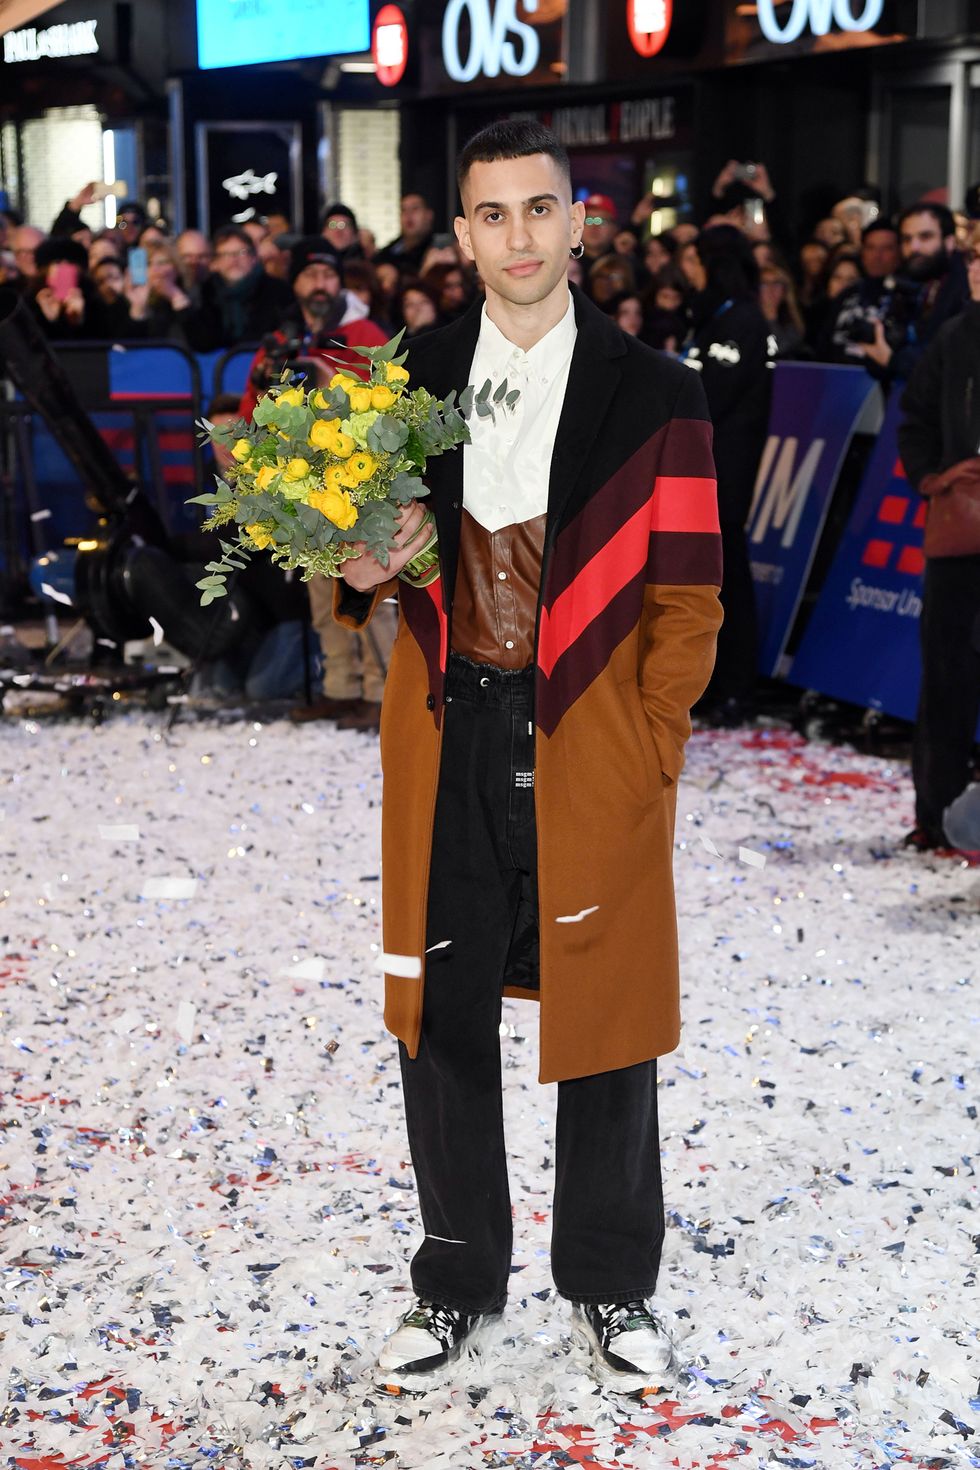 Mahmood vince Sanremo 2019 anche con un look anni 90, uno schema semplice fatto di camice uomo stampate eccentriche come se fossero state prese dall'armadio di papà, in un'operazione nostalgia di adolescente.